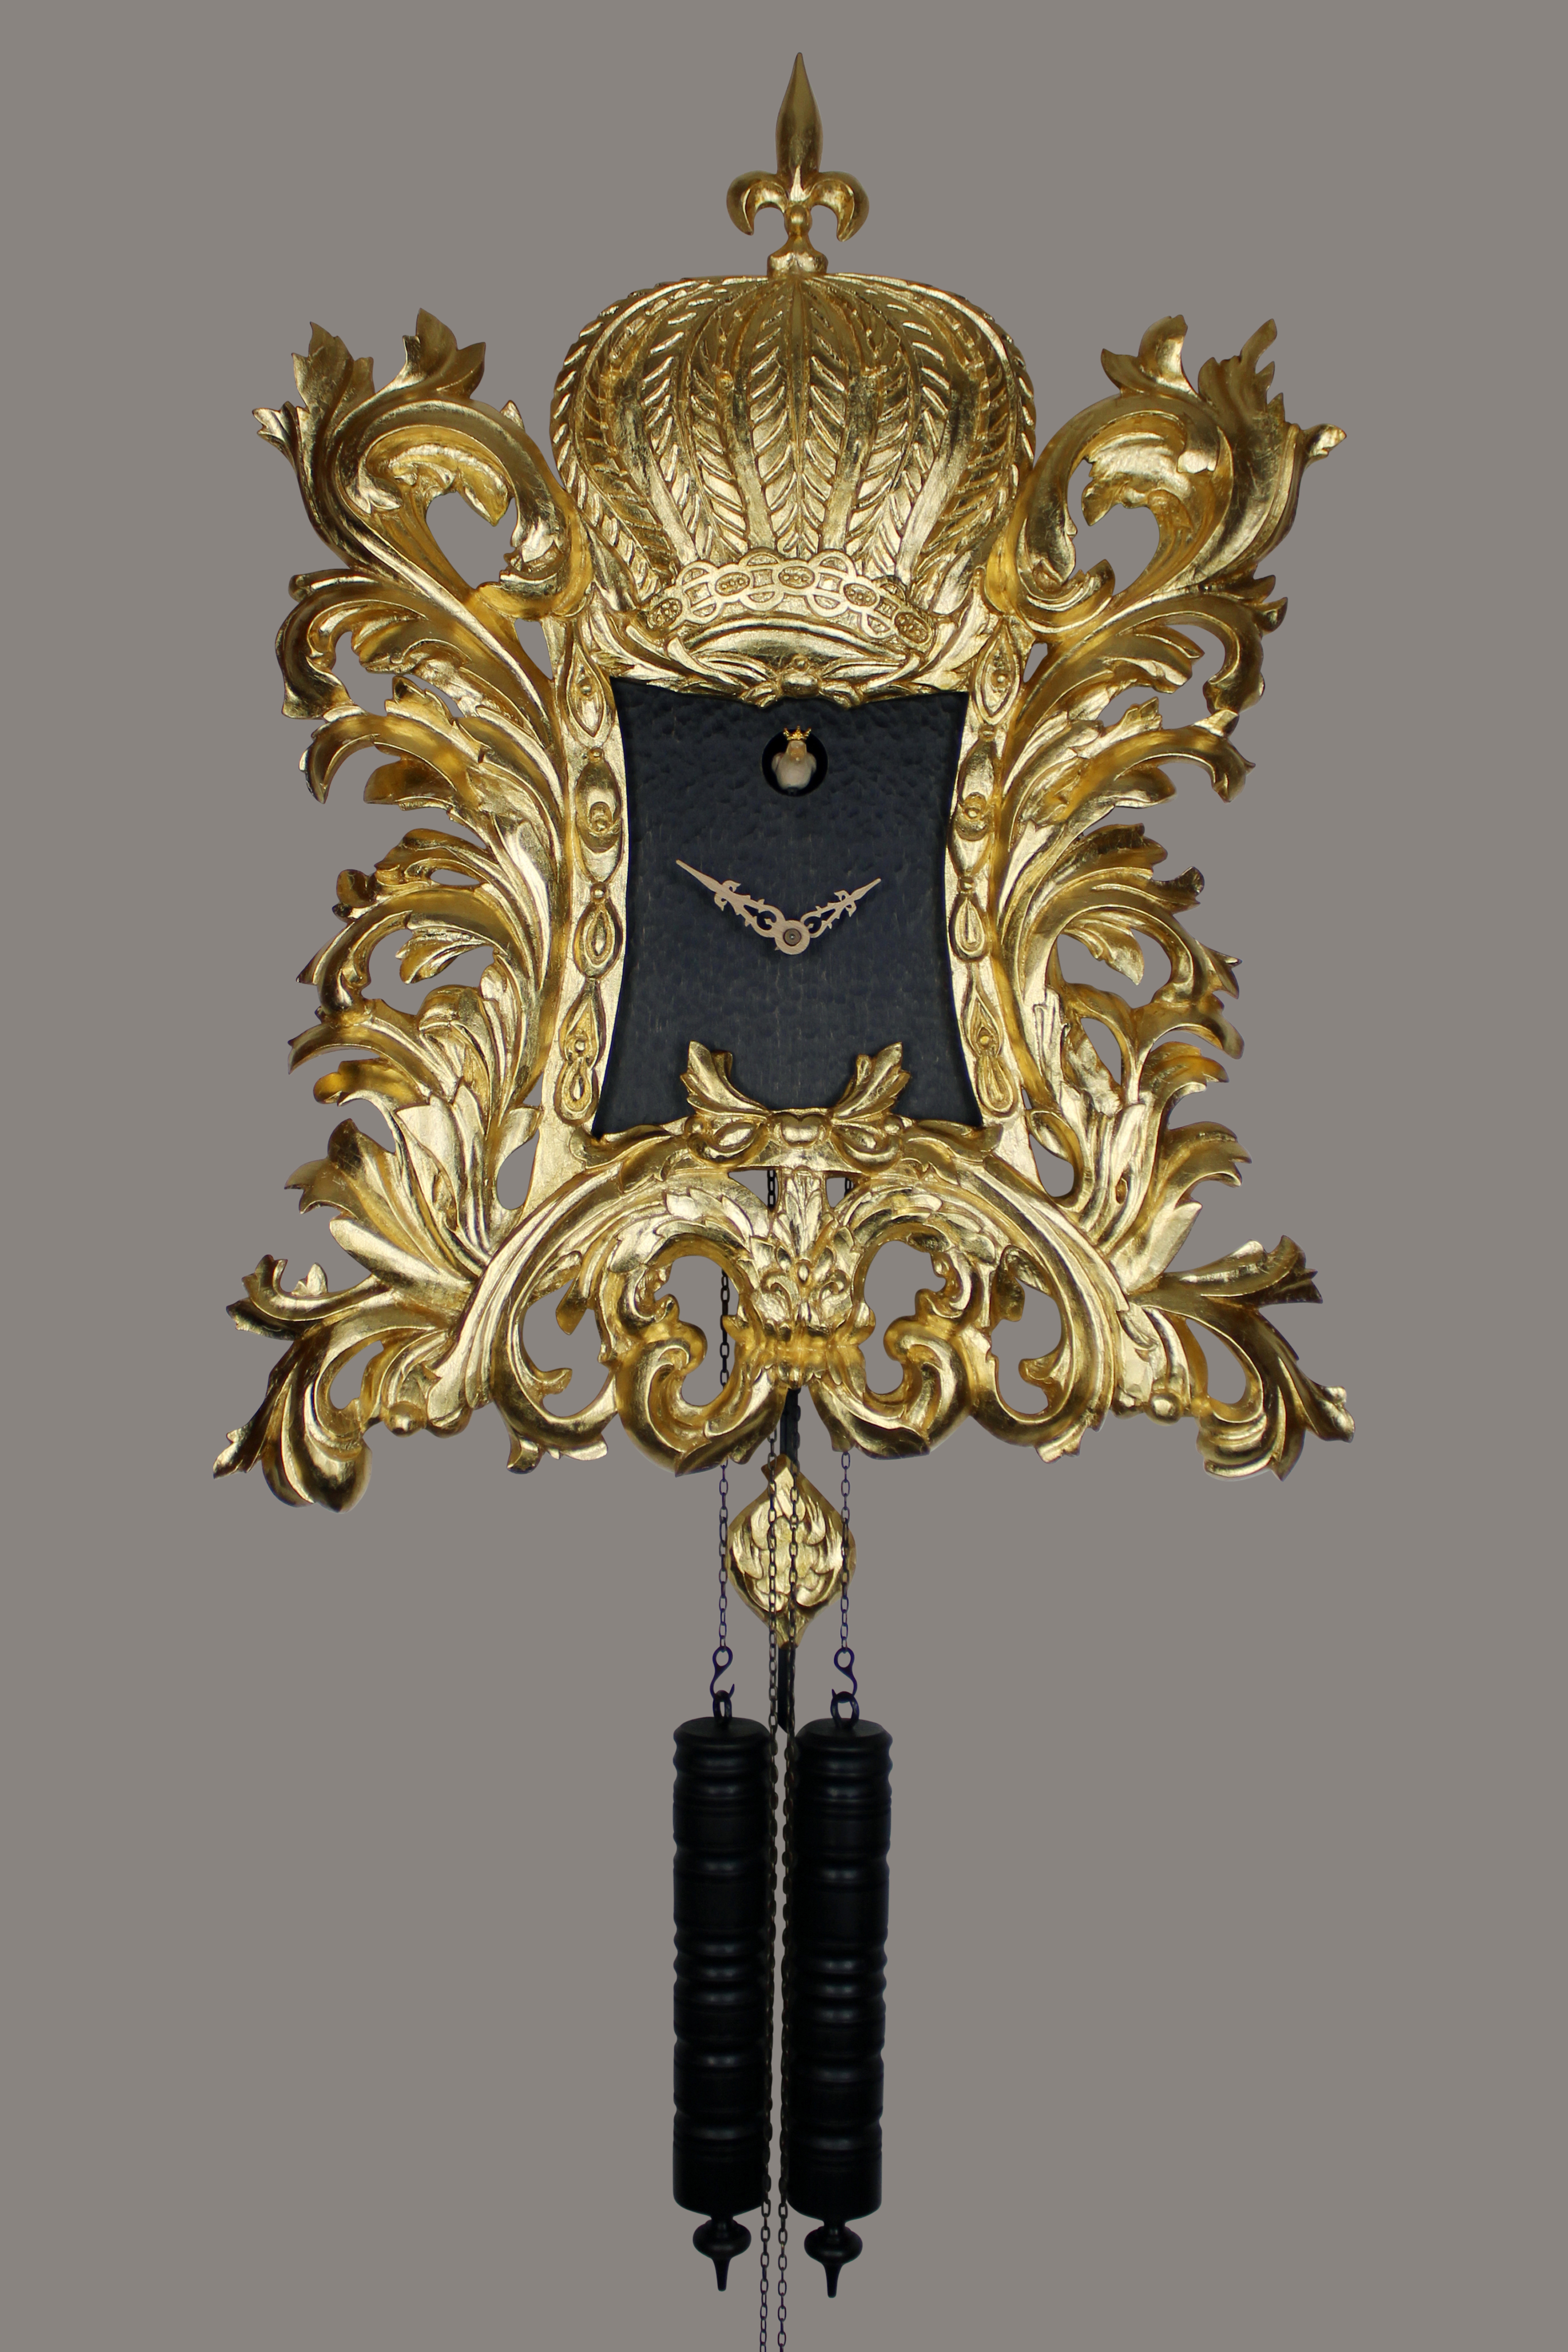 22K gold-plated Pompöös Cuckoo clock designed by Harald Glööckler